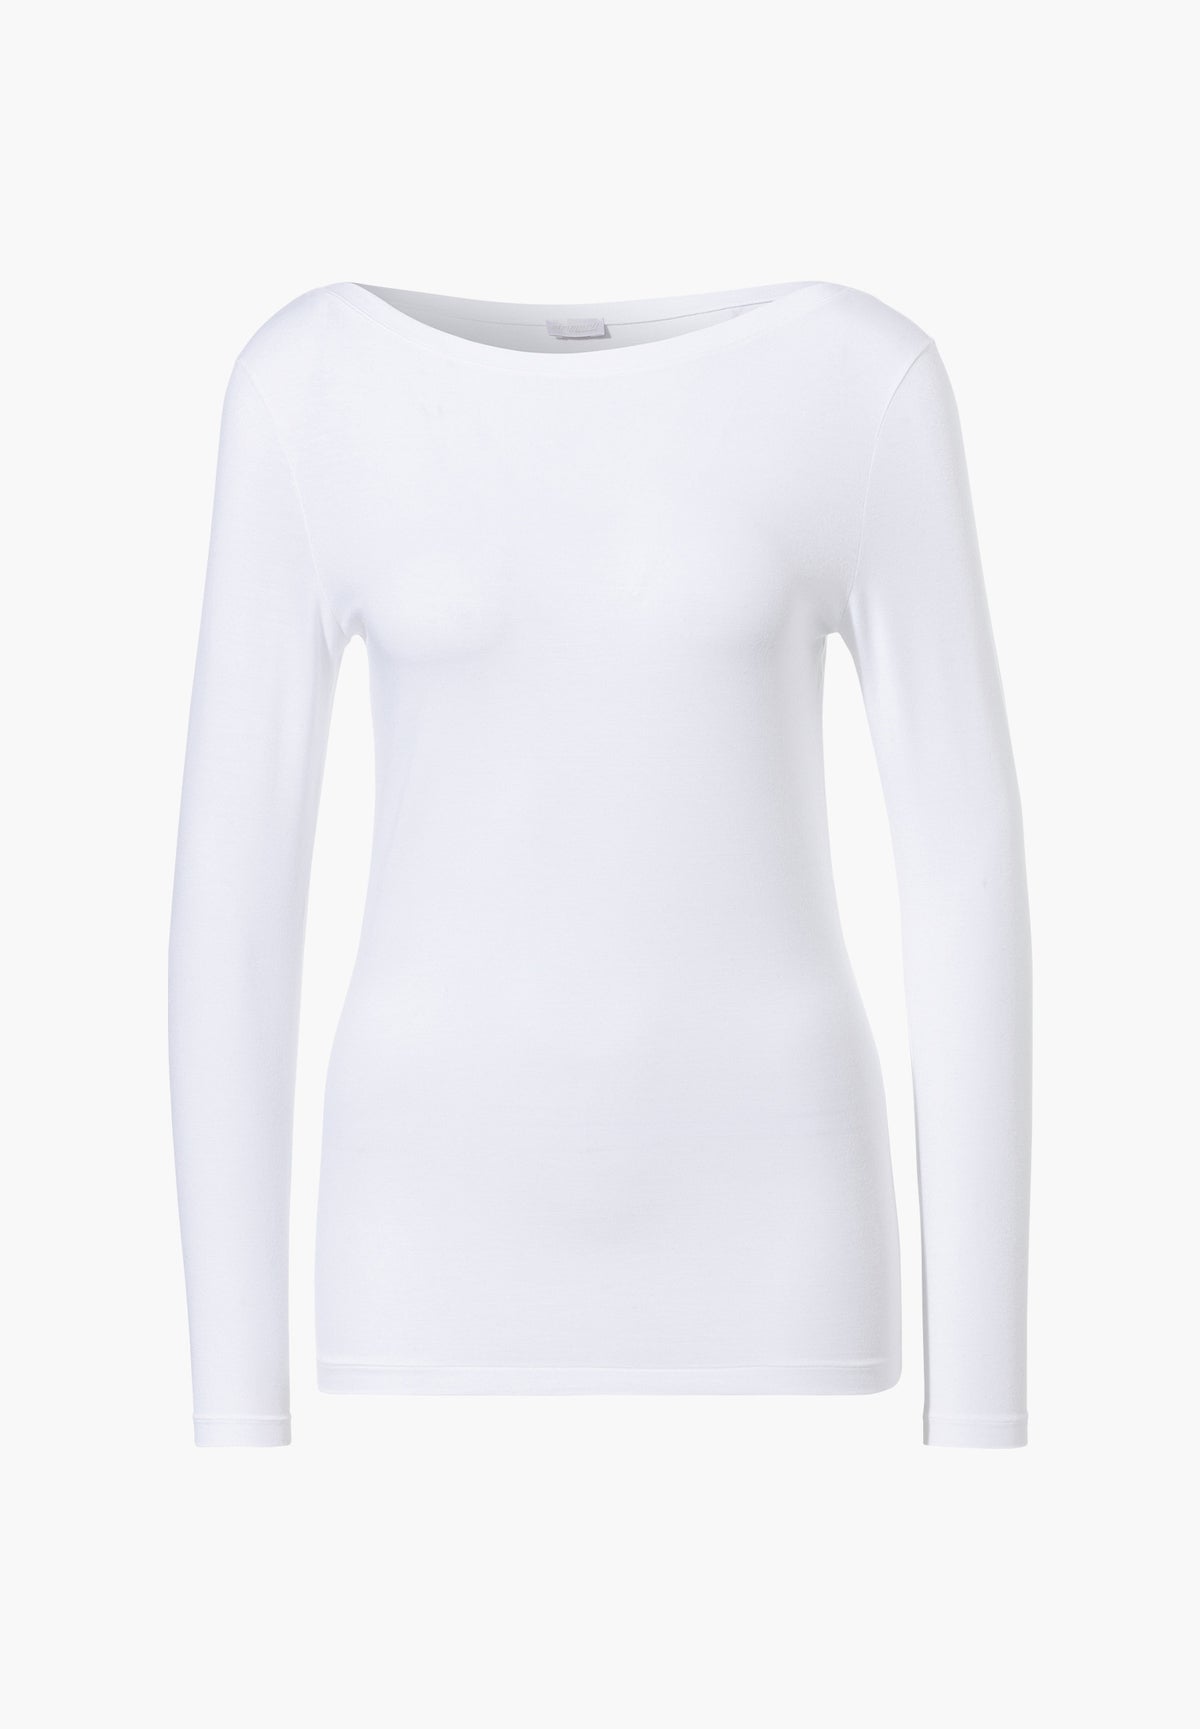 Pureness  T-Shirt Long Sleeve - white - Zimmerli of Switzerland (Schweiz)